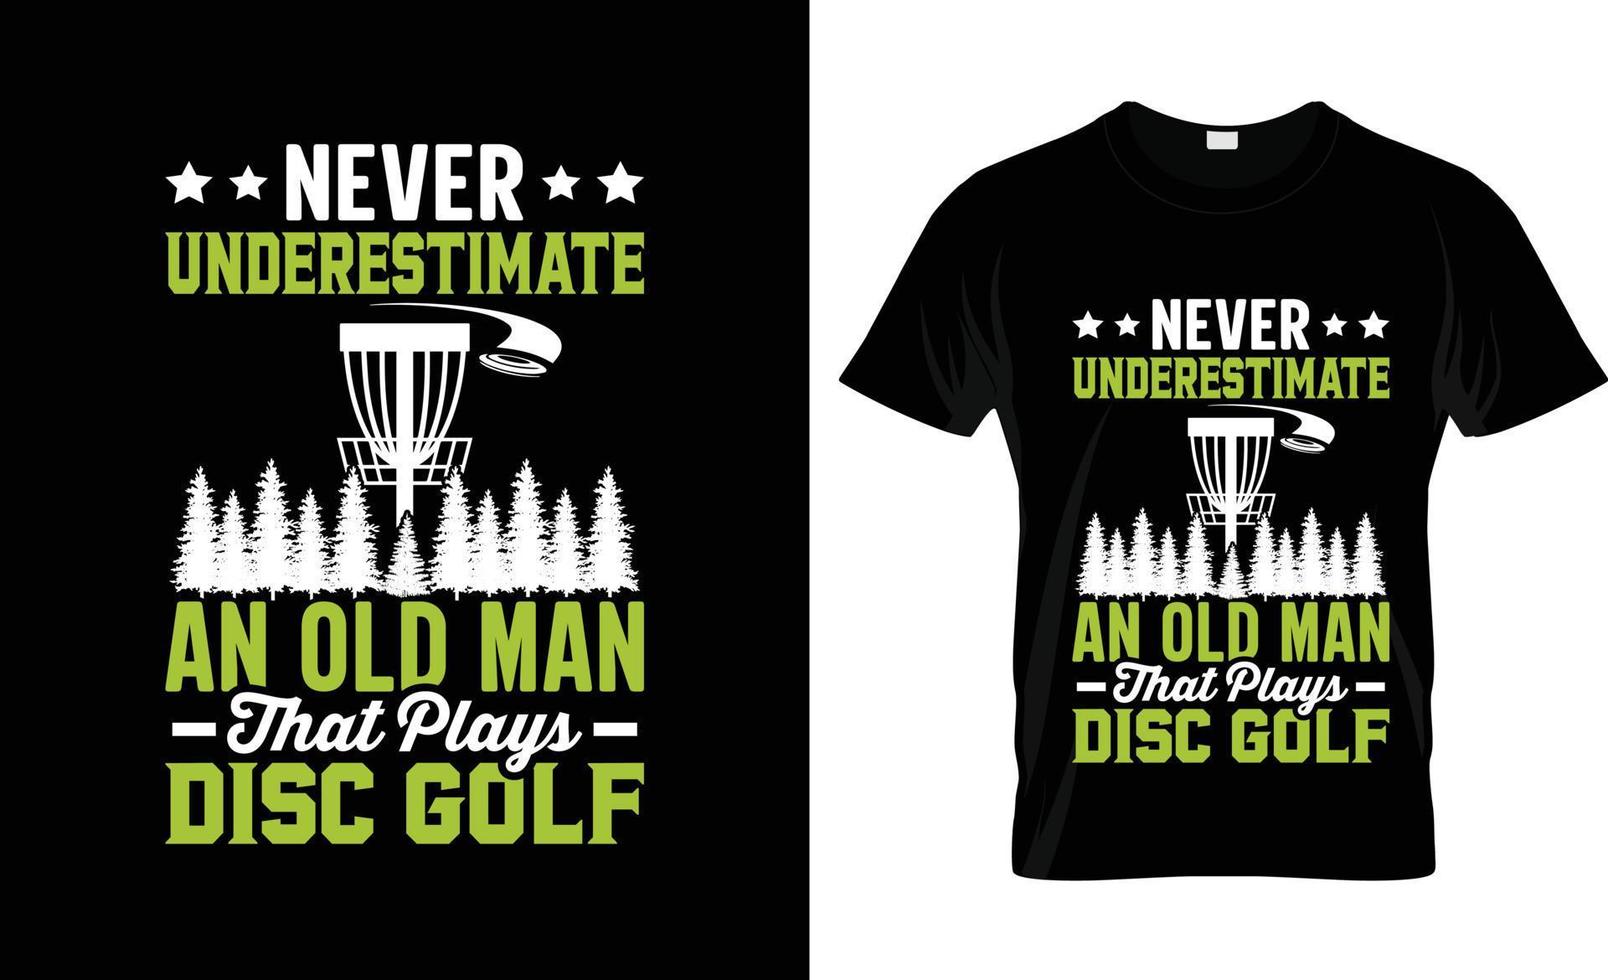 design de t-shirt de golfe, slogan de t-shirt de golfe e design de vestuário, tipografia de golfe, vetor de golfe, ilustração de golfe